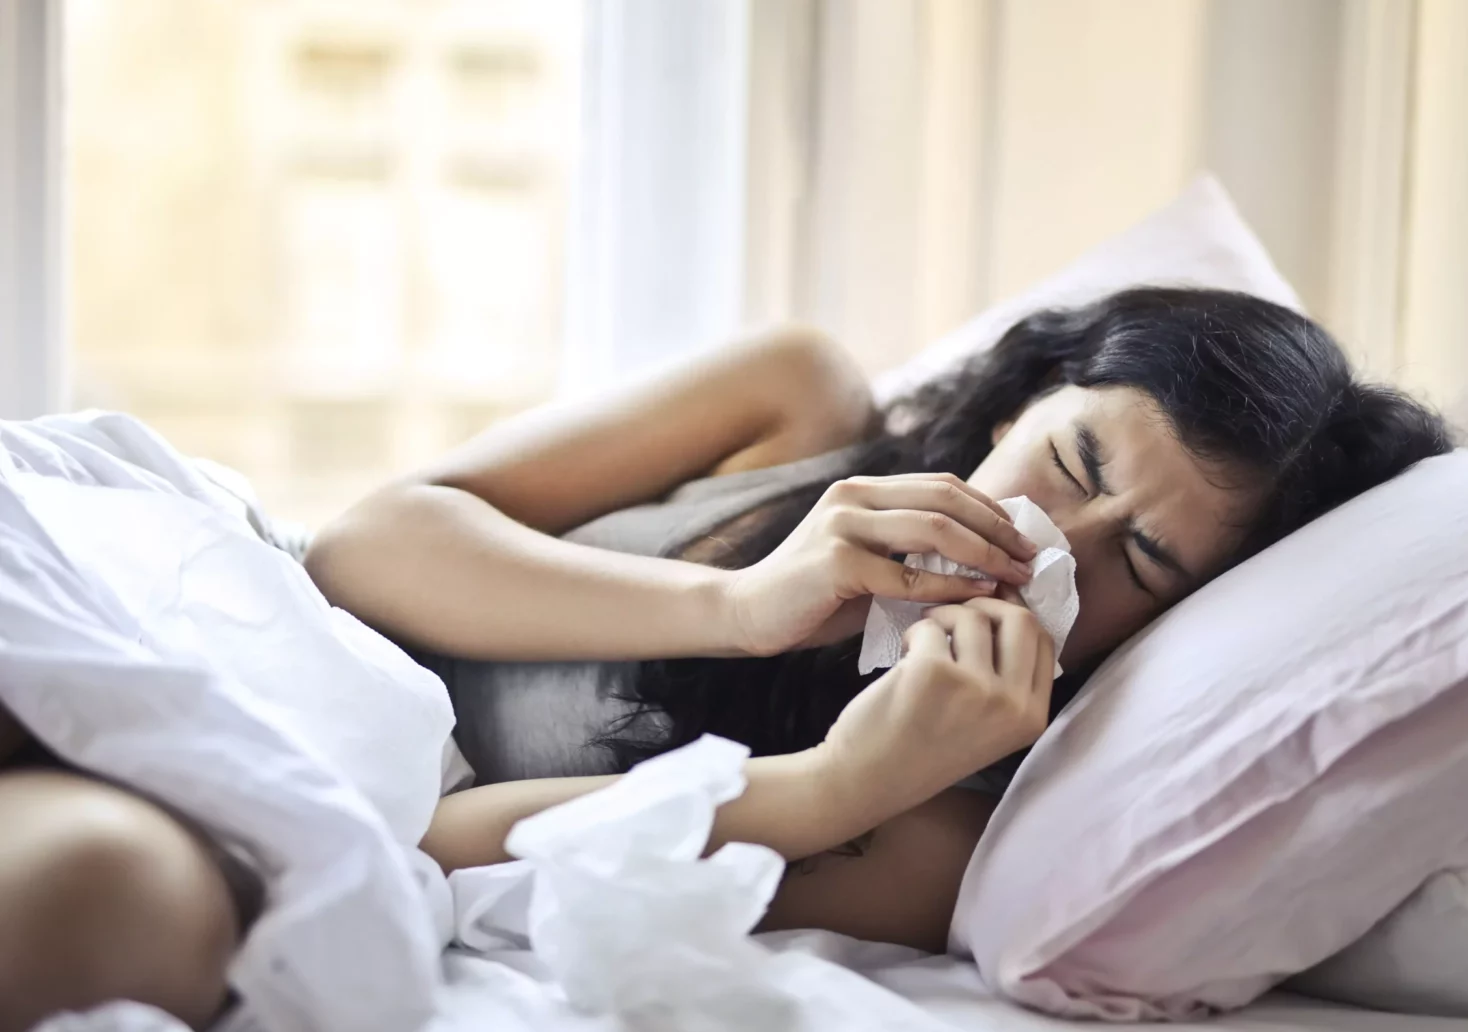 Symbolfoto auf 5min.at zeigt eine kranke Frau im Bett liegend.